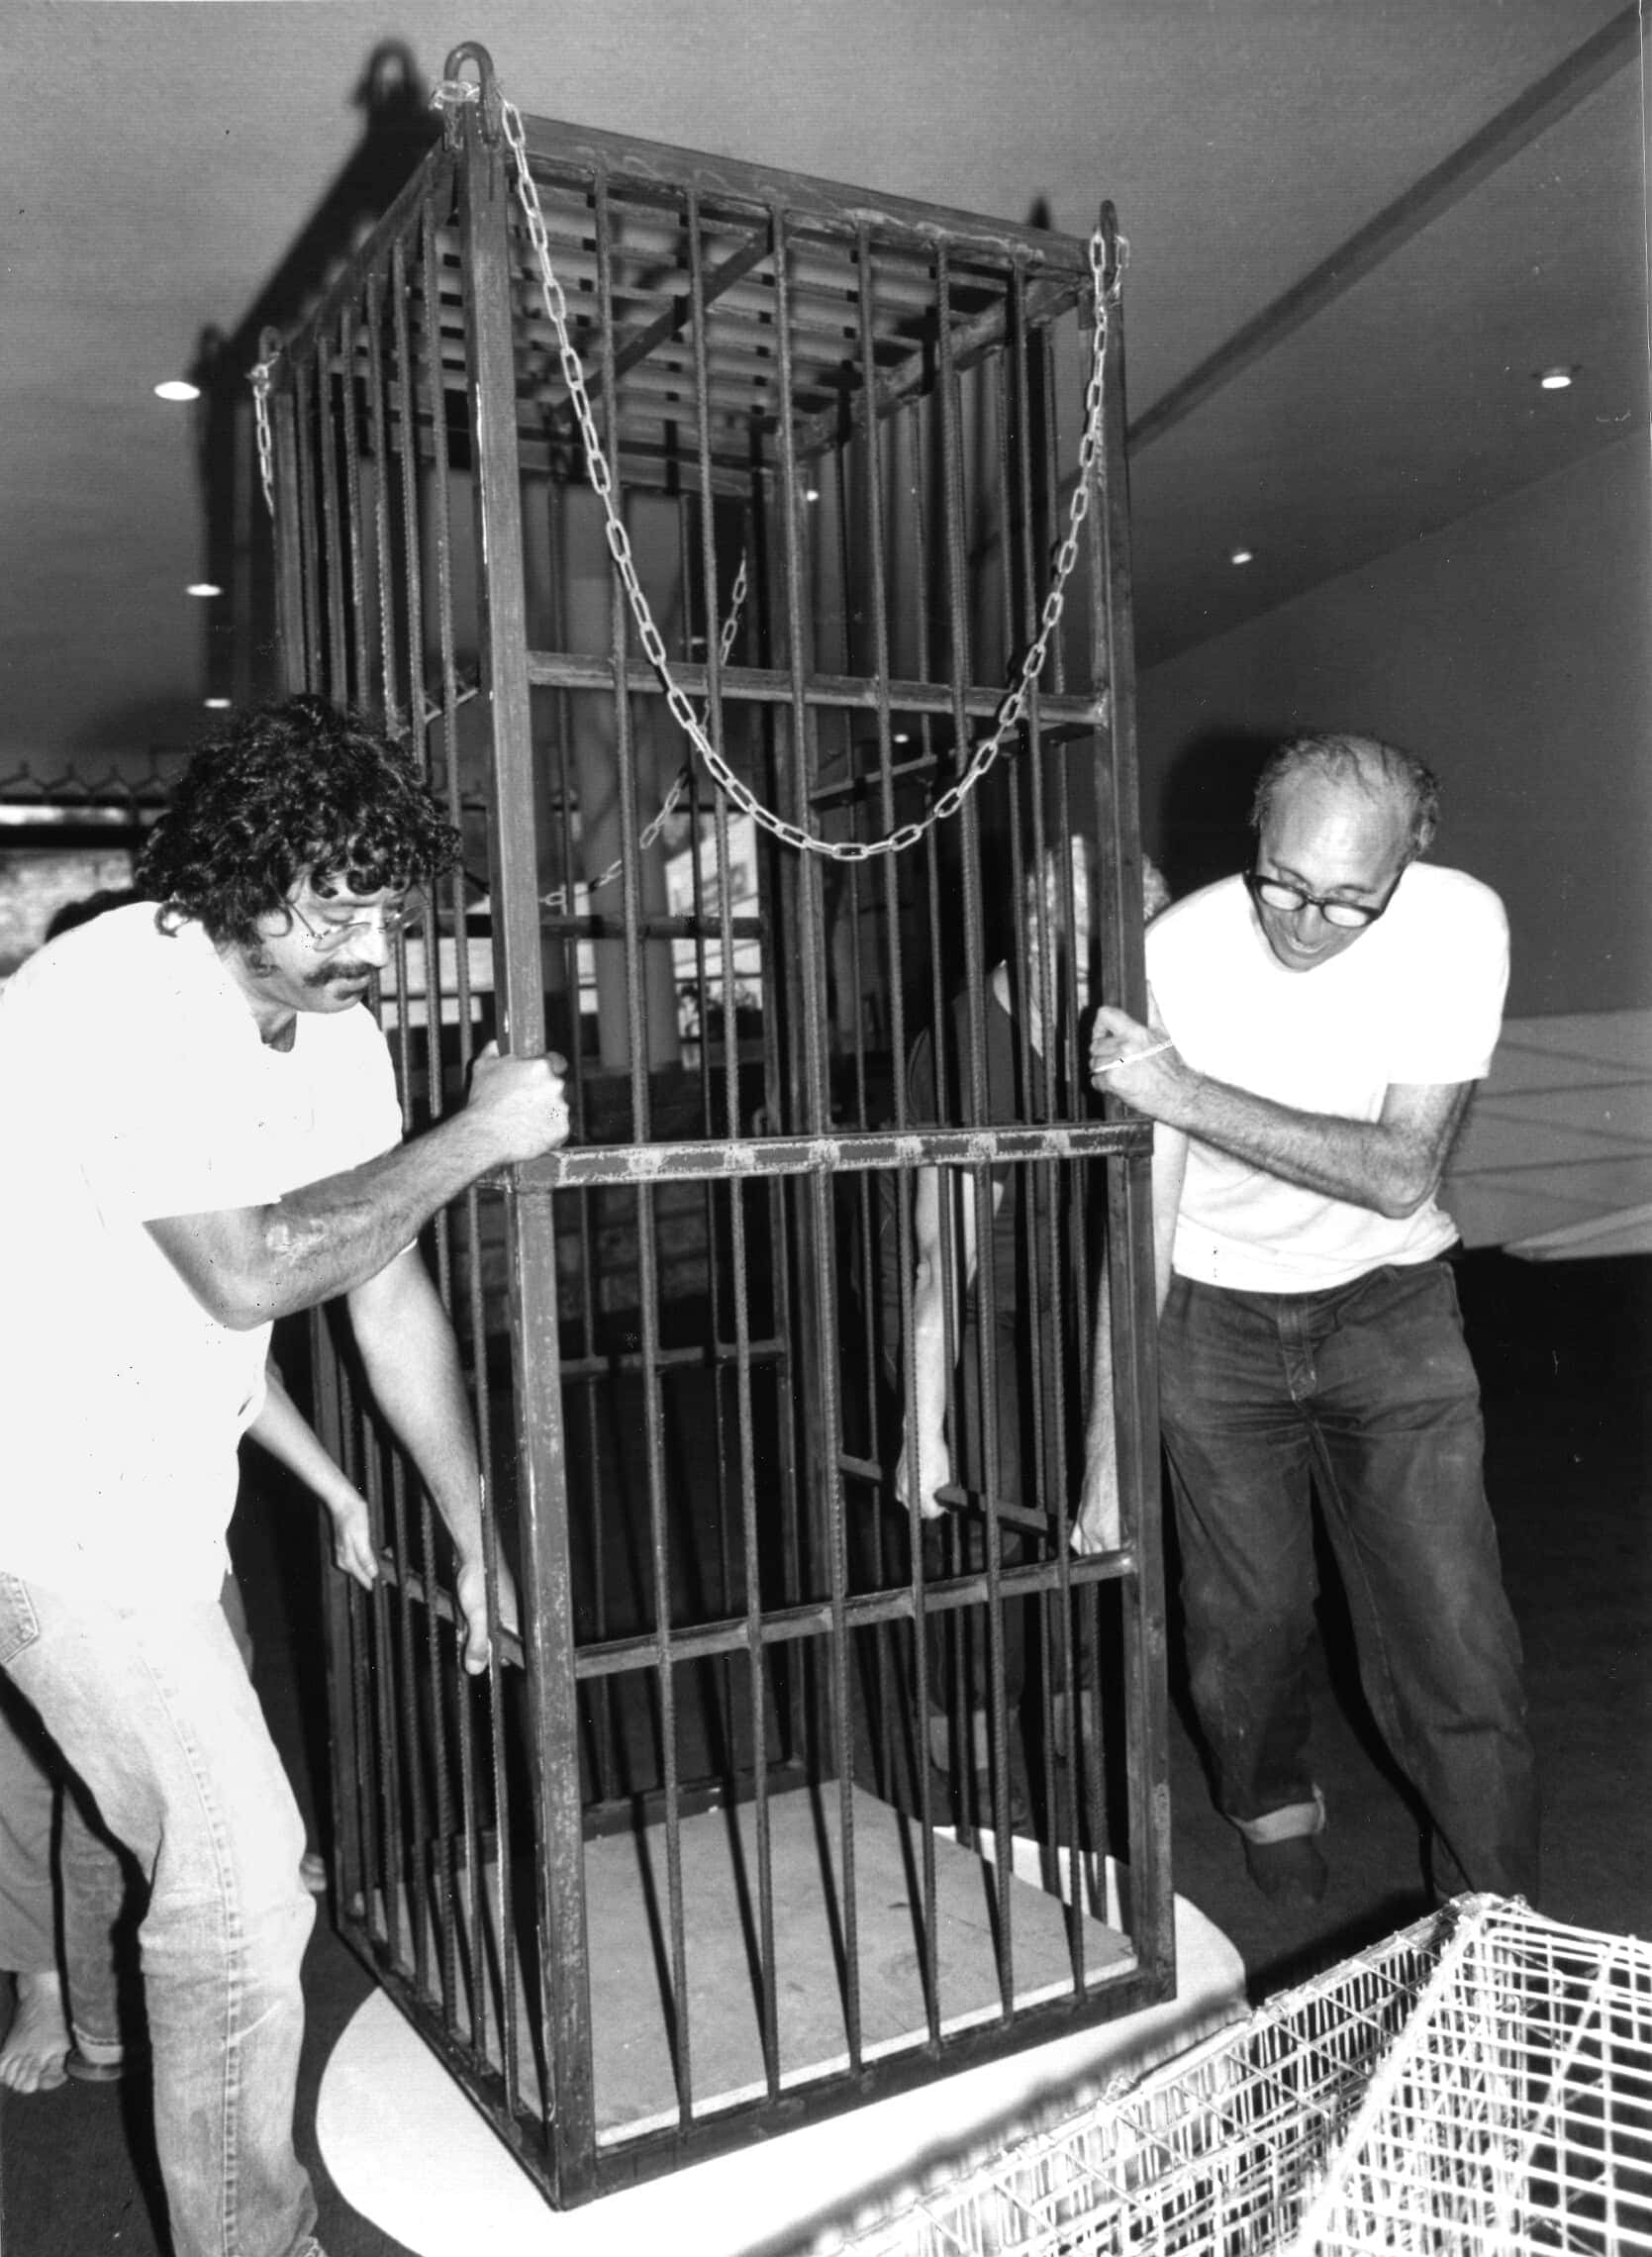 טולי באומן (מימין) בזמן ההצבה של תאי מאסר טרומיים בתיאטרון ירושלים, 1986 (צילום: בועז לניר, ארכיון הצלם)